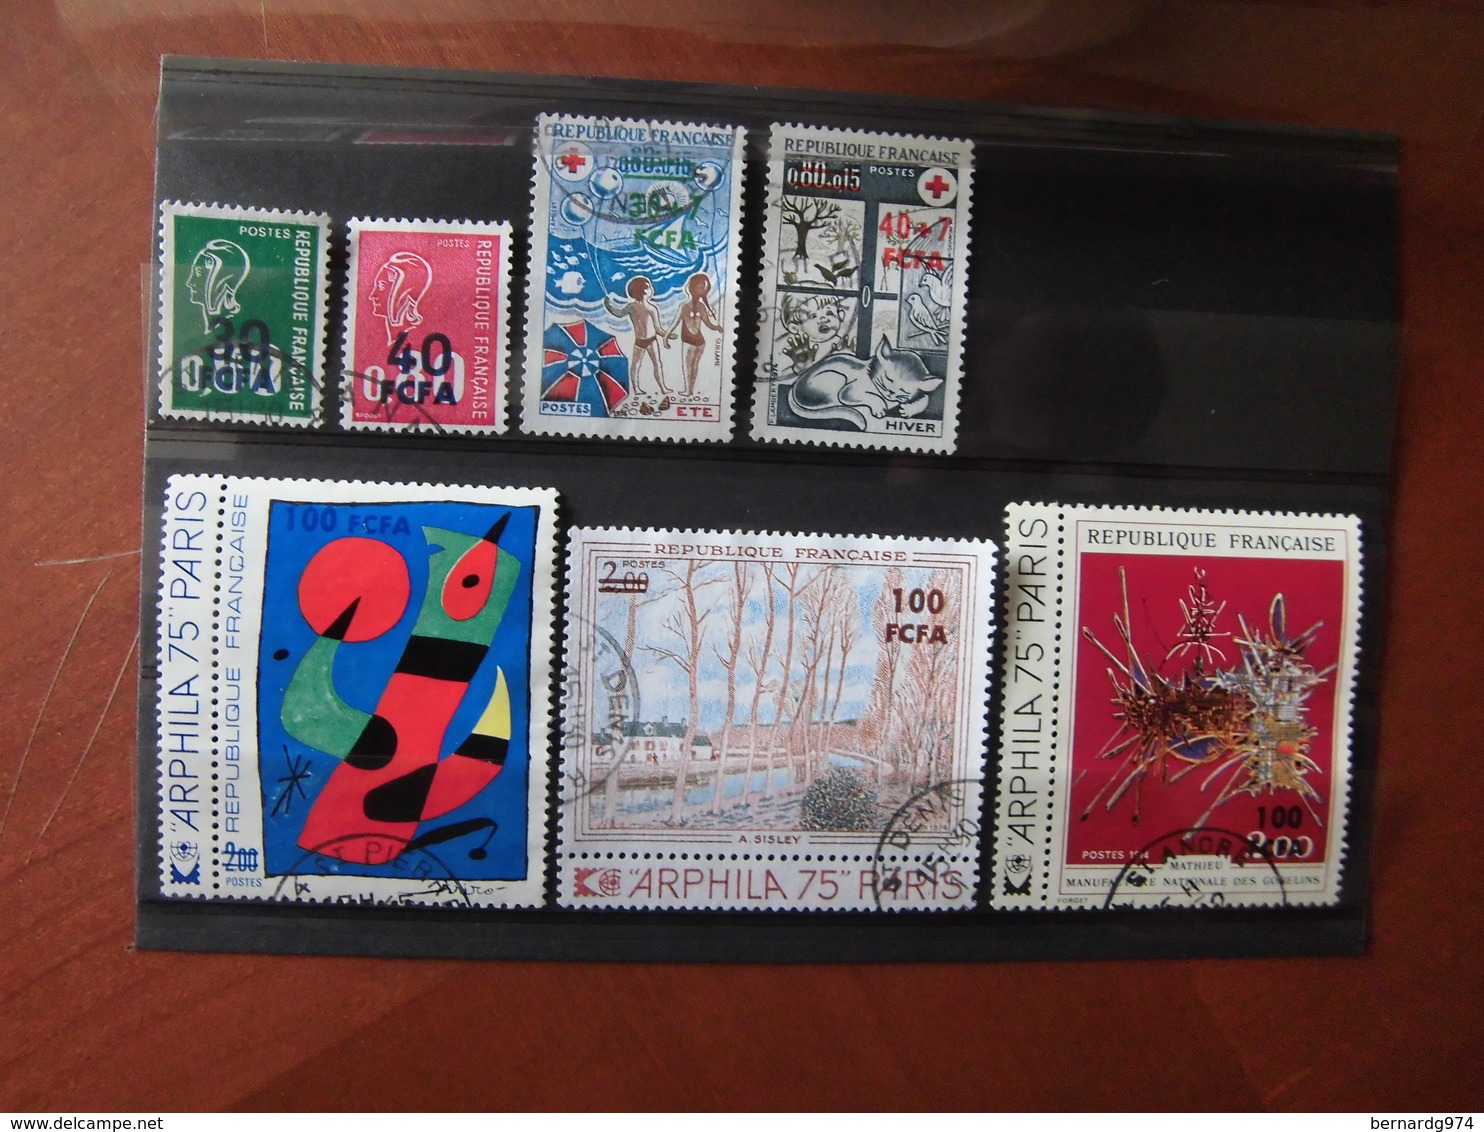 Réunion CFA : collection quasi complète oblitérée. 199 timbres différents. Côte Y et T 2004 : 475 euros.